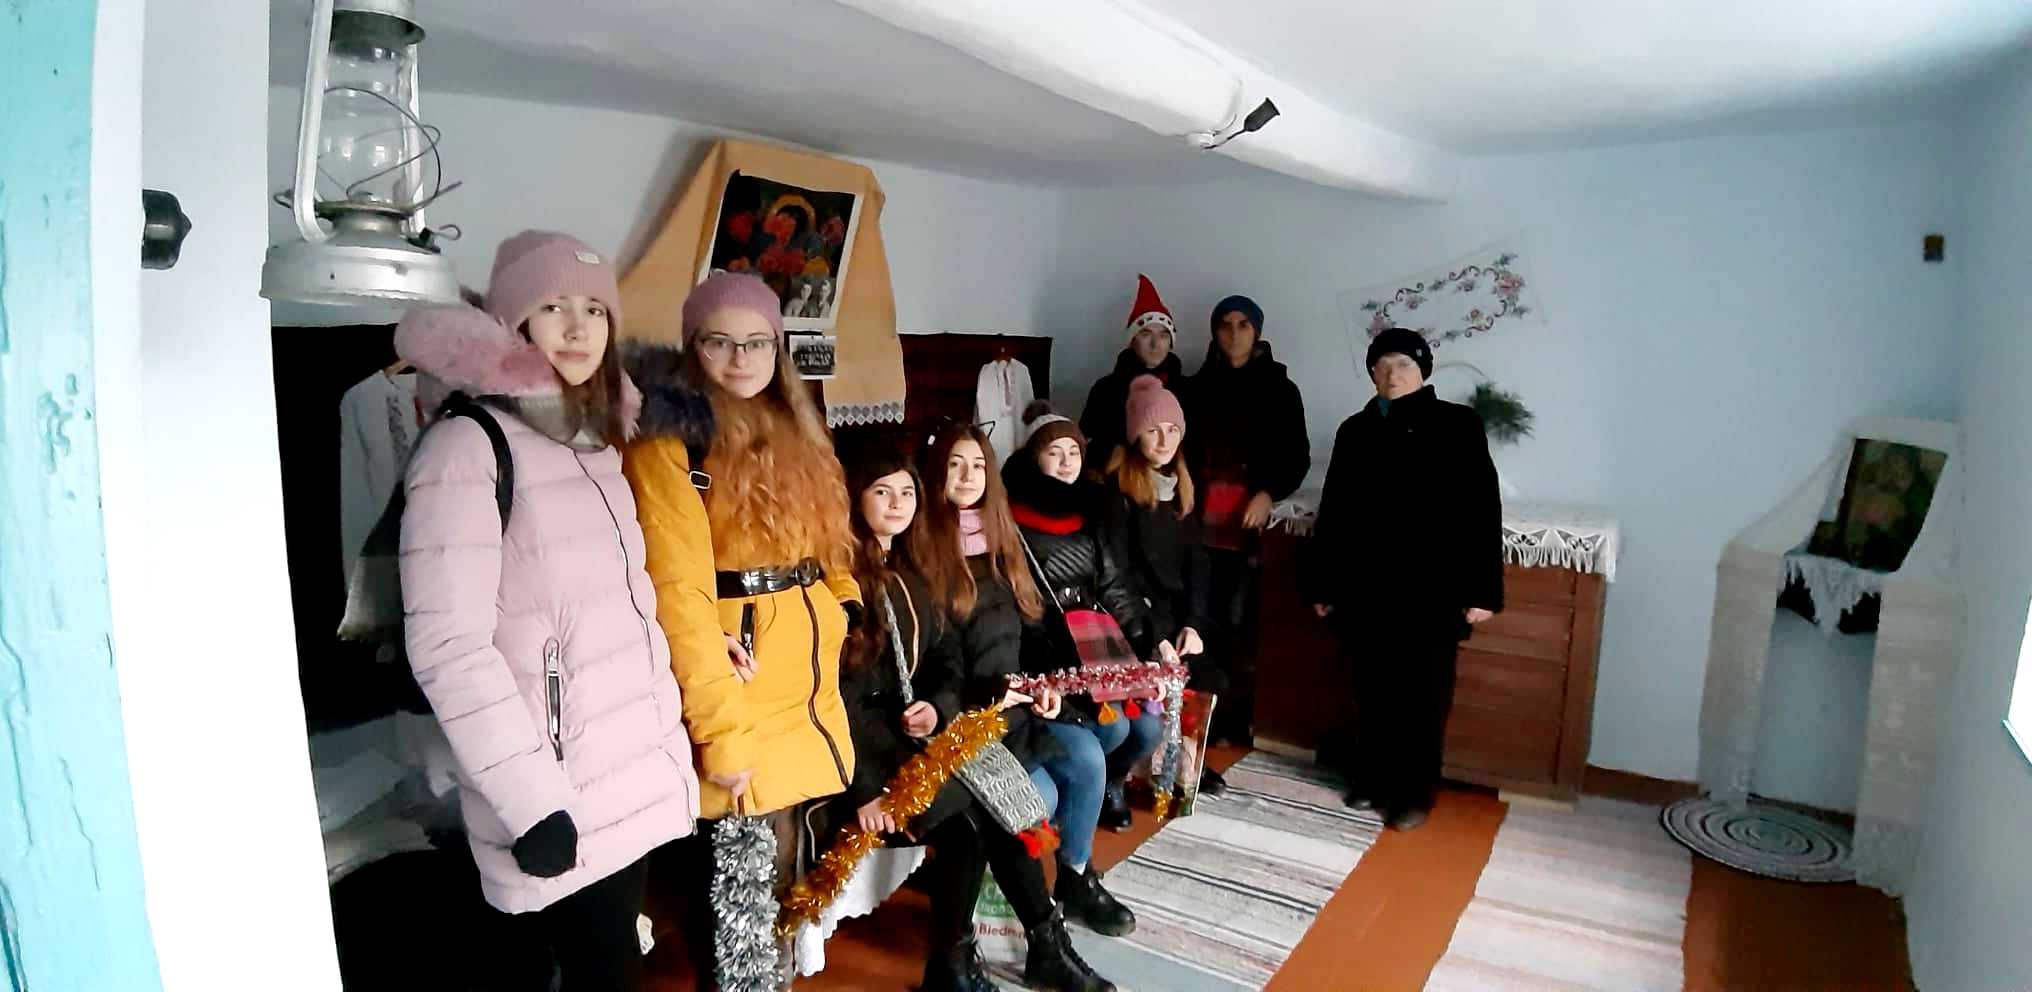 Начали новый год с хороших дел: в Болградском районе молодежь поздравляла одиноких людей